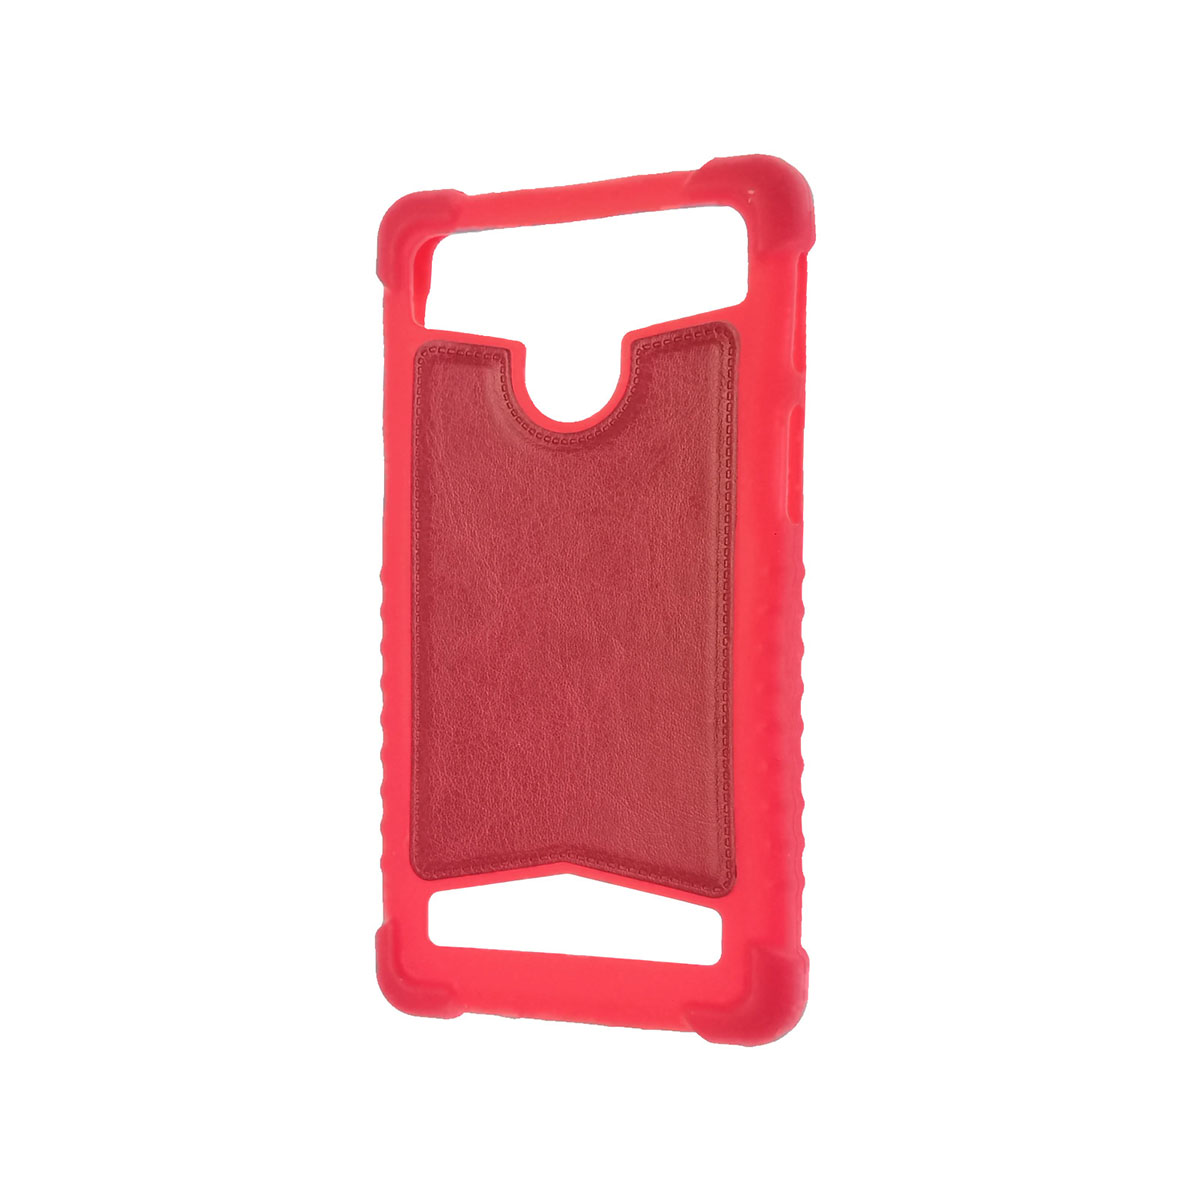 Чехол накладка универсальная 4.5 дюймов, силикон, экокожа, цвет красный.